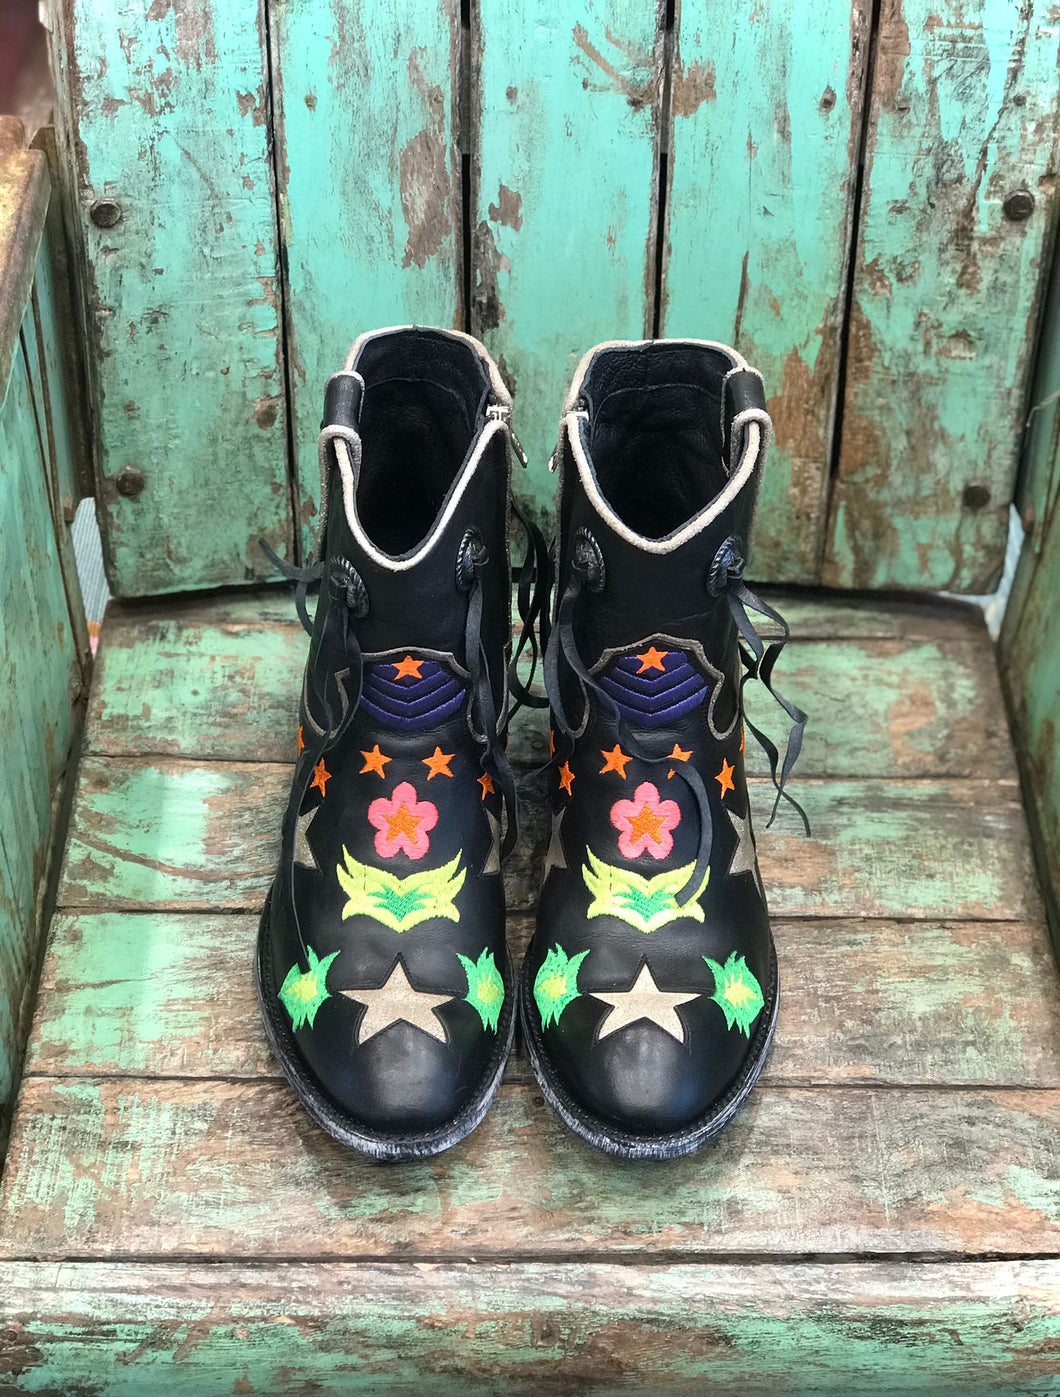 Stivali in pelle nera con stelle colorate - MEXICANA